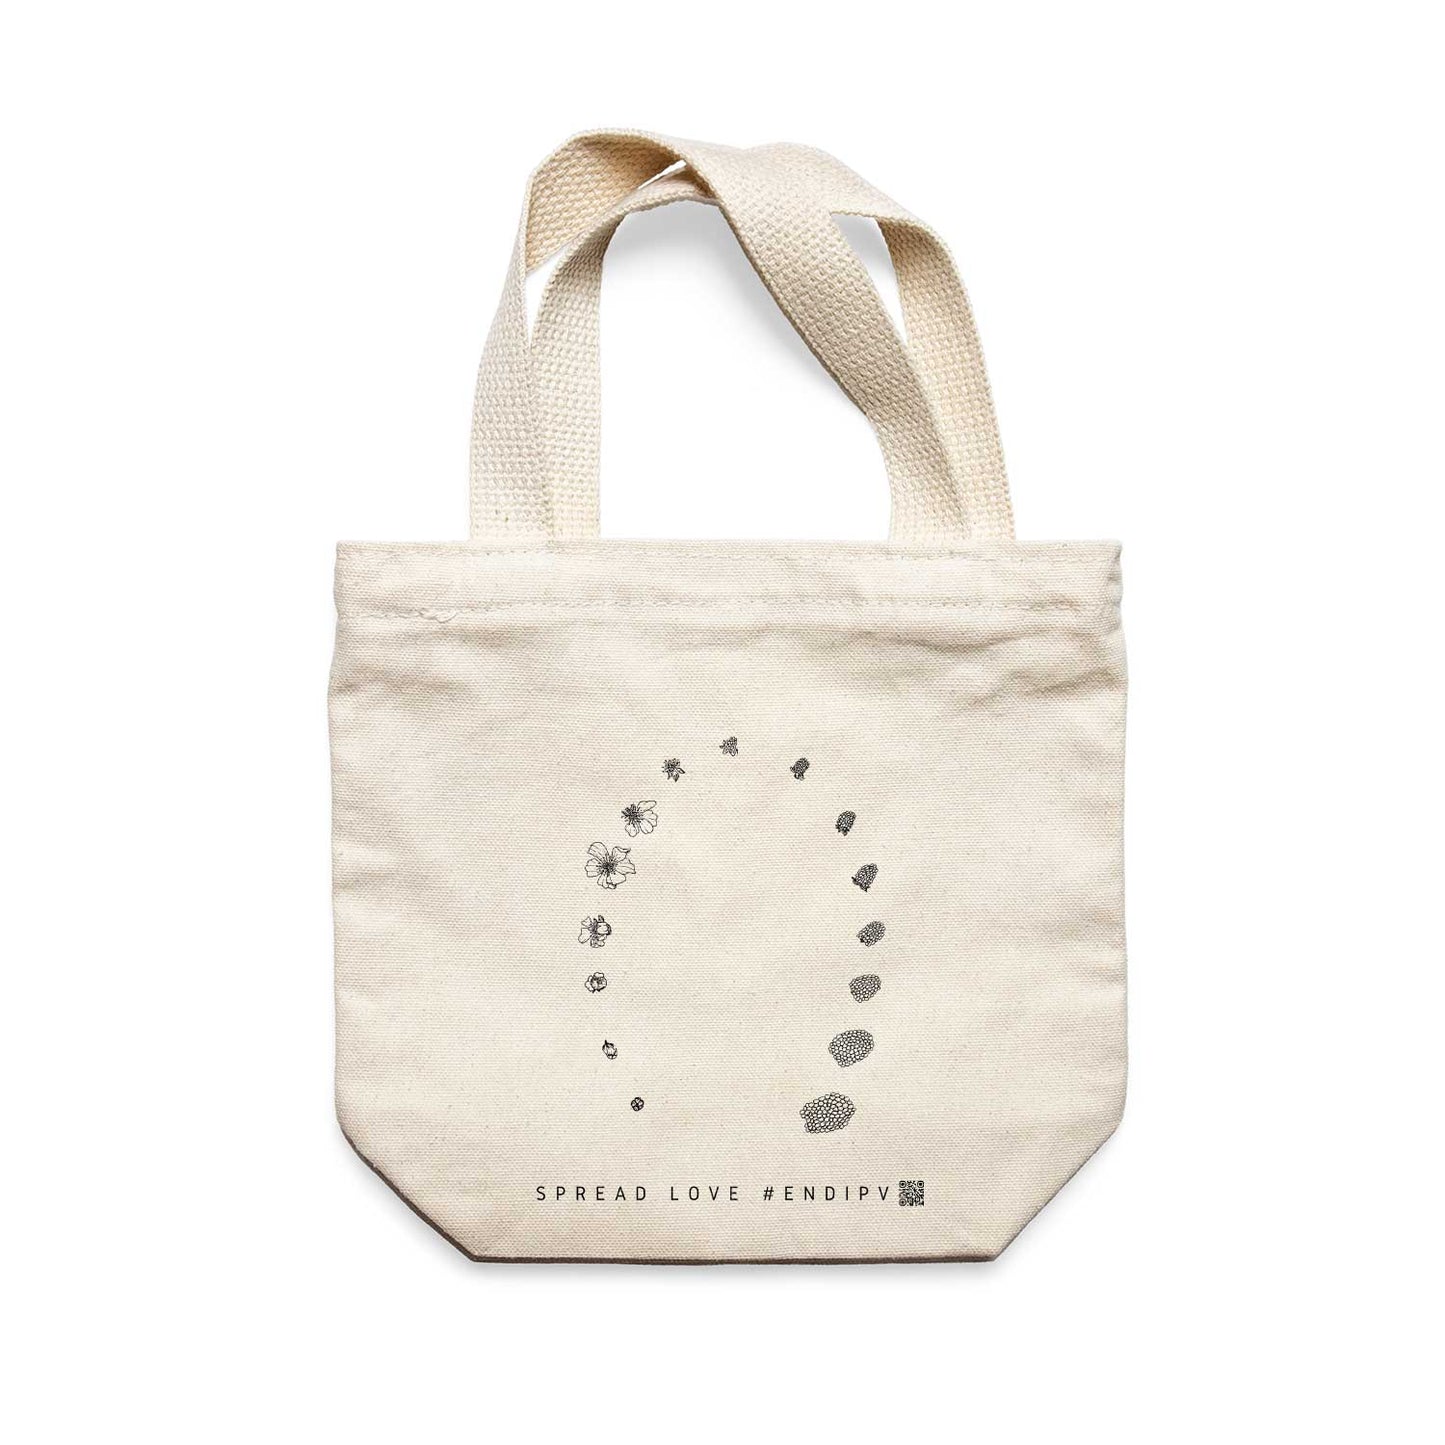 תיק צד לנשים וגברים מבד 100% כותנה טבעית בעיצוב Circle Of Life Tote Bag מציור מקורי של גאיה